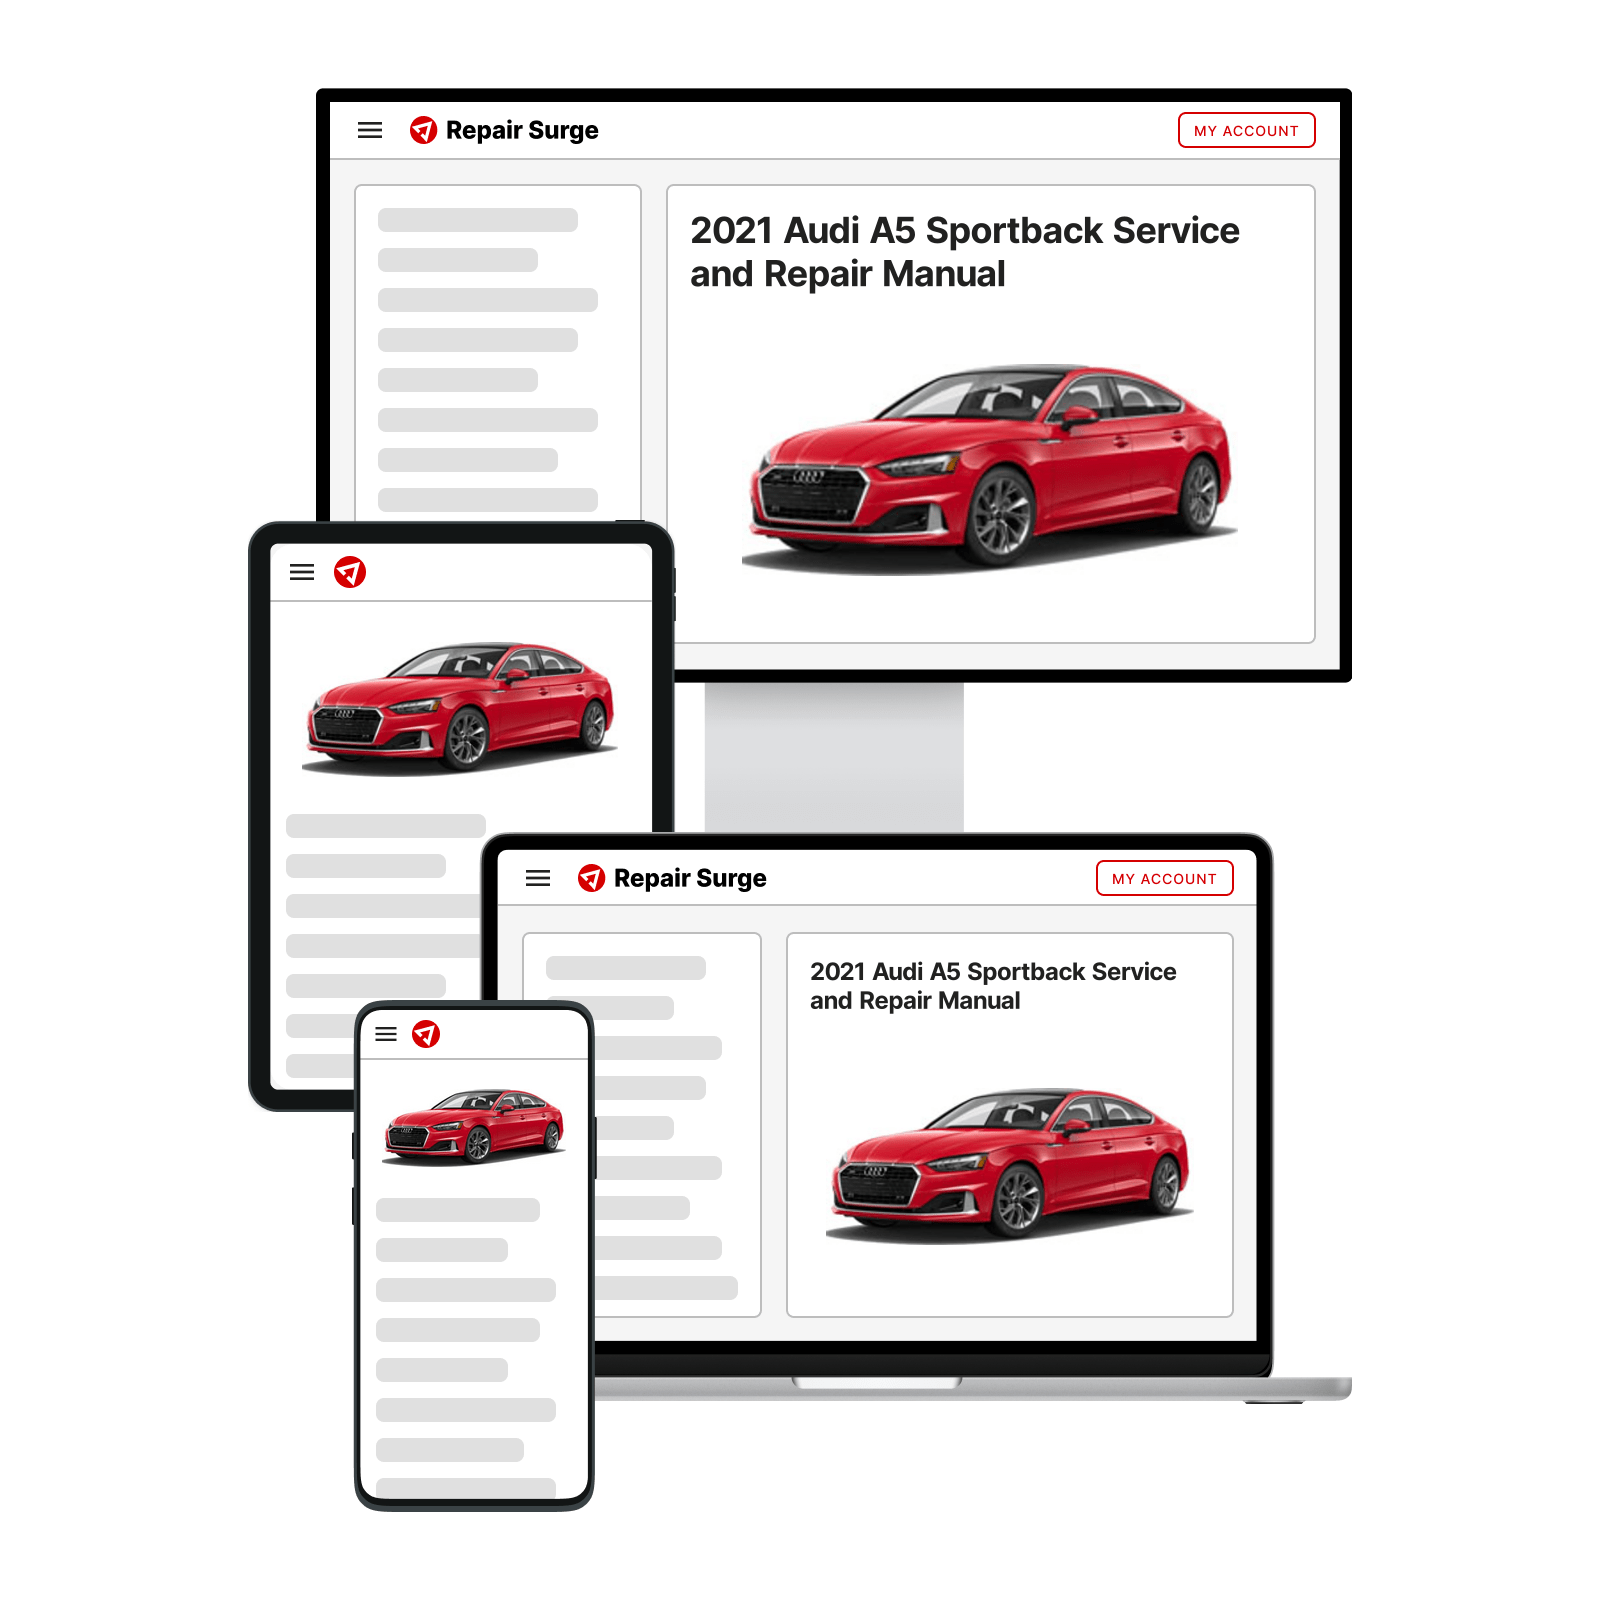 2021 Audi A5 Sportback service and repair manual hero image